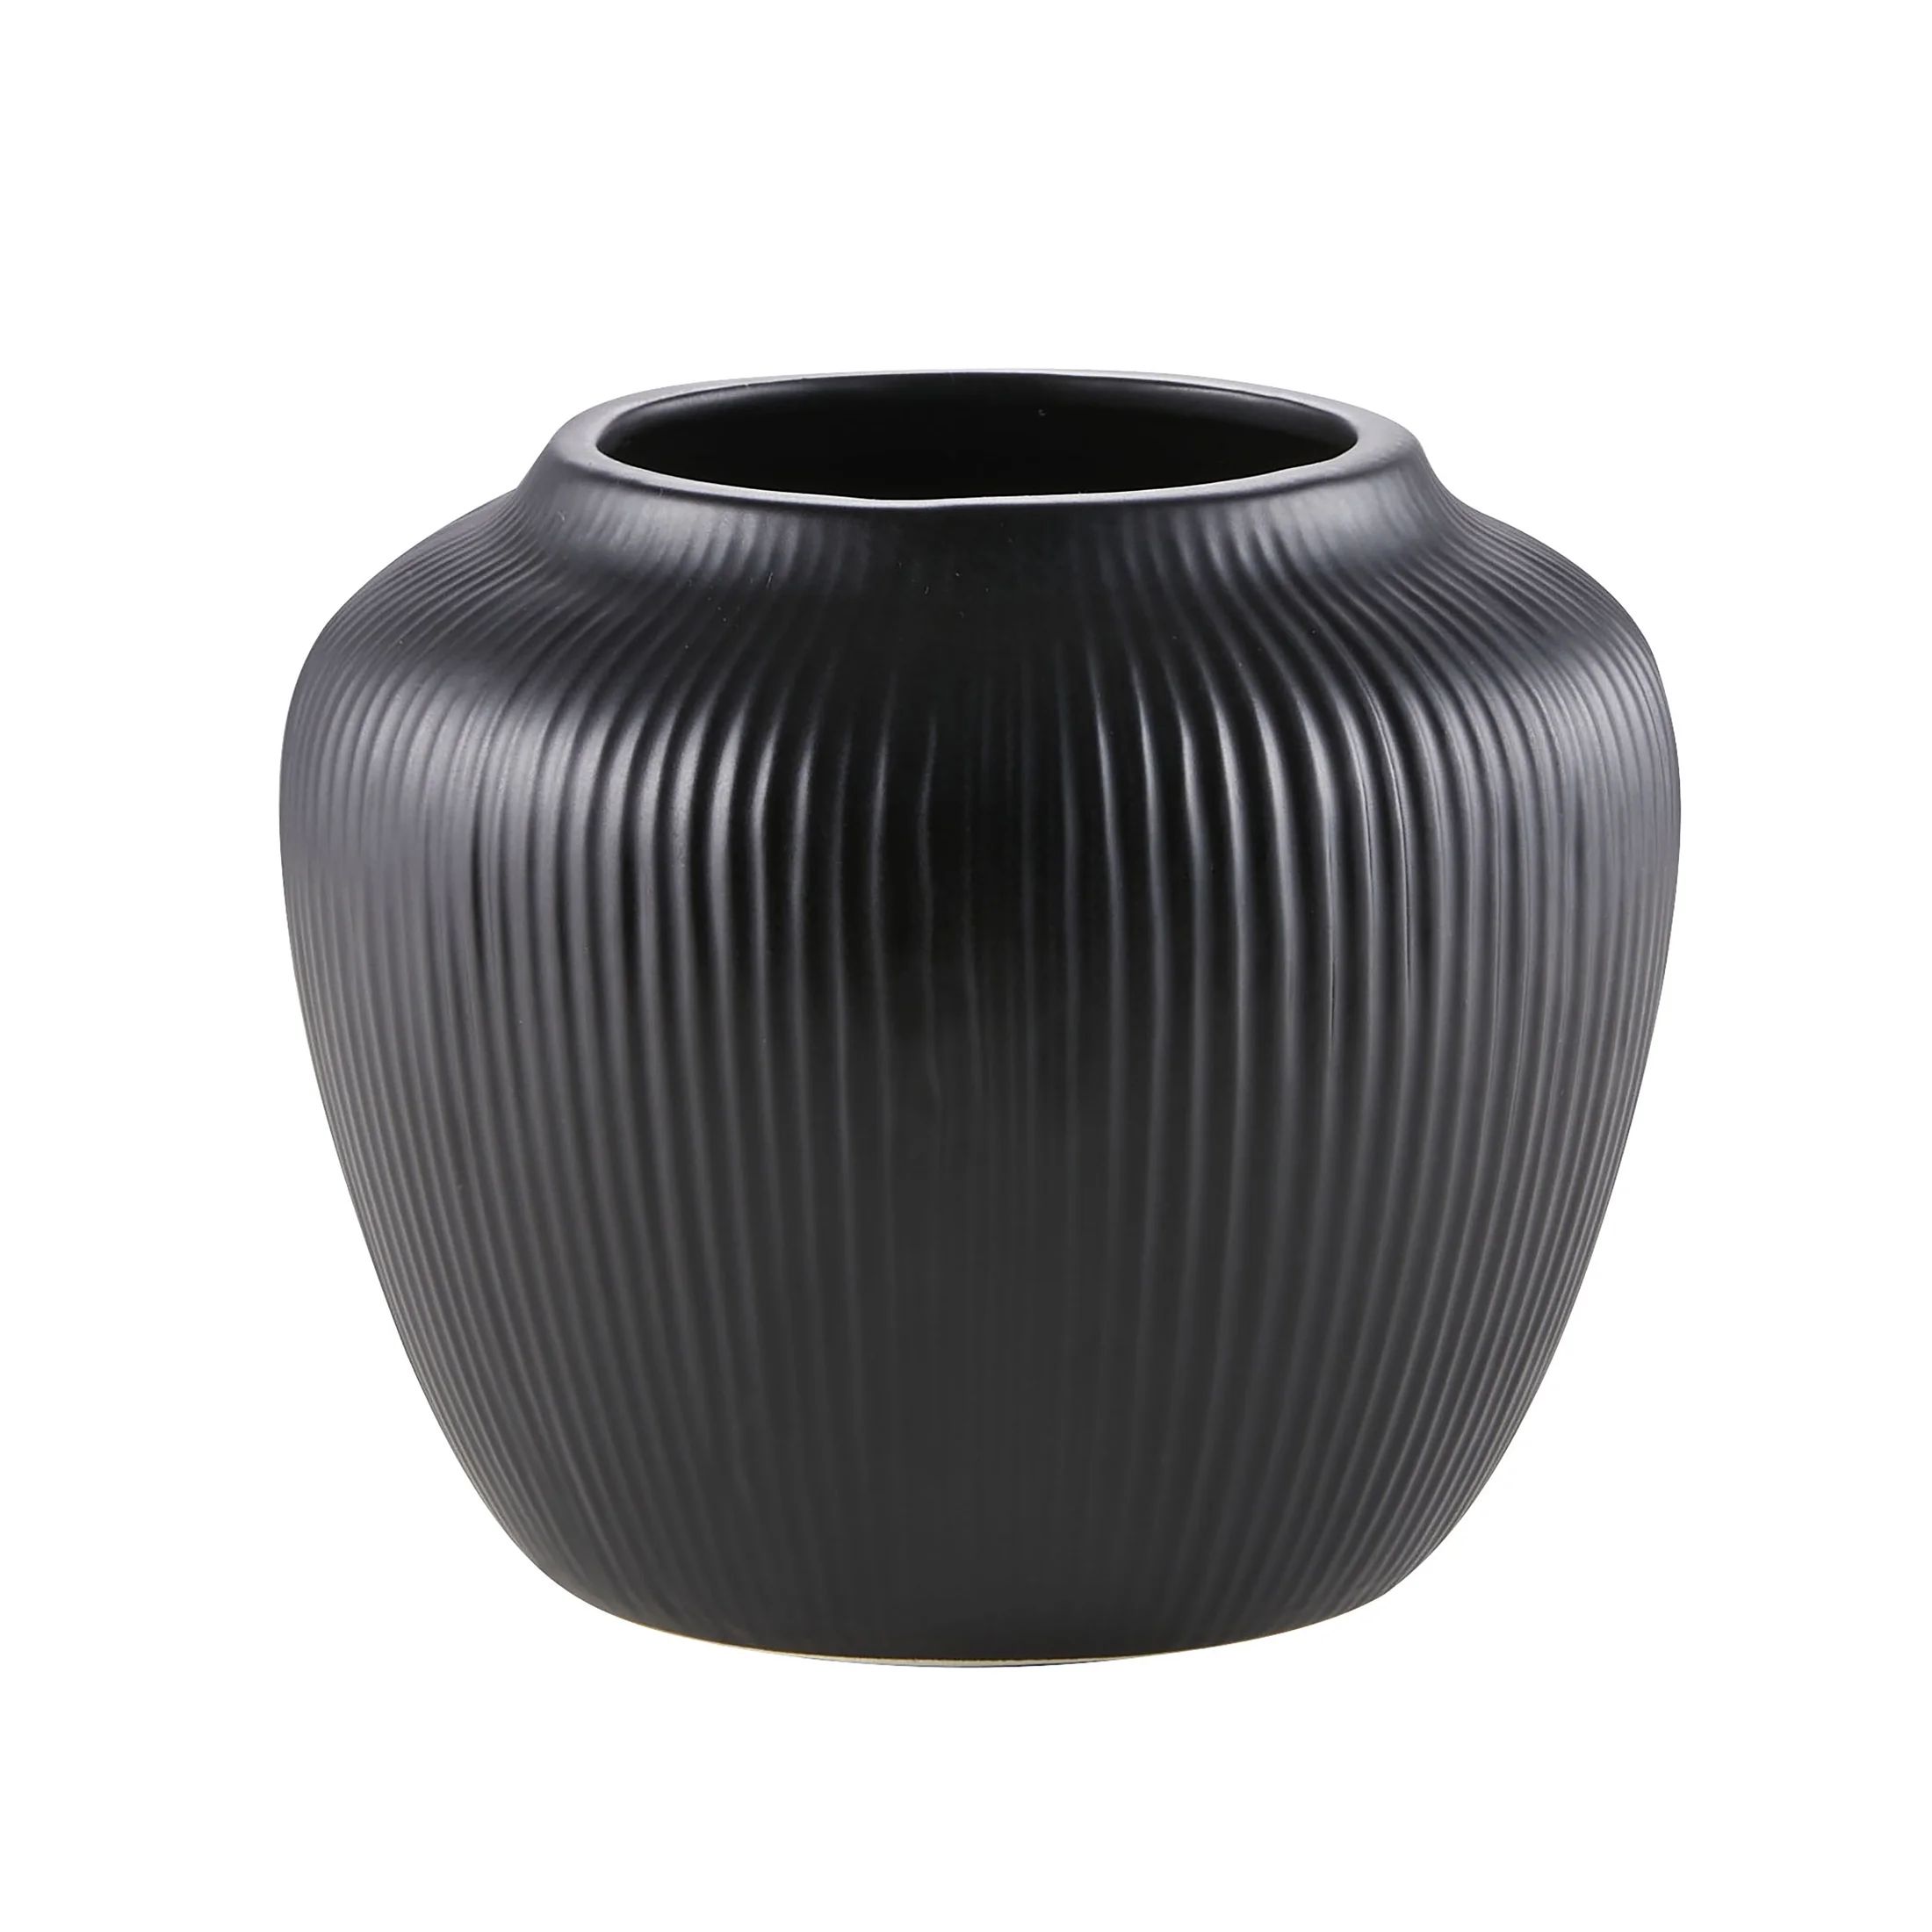 My Texas House 5" Black Textured Stripe Round Stoneware Vase - Walmart.com | Walmart (US)